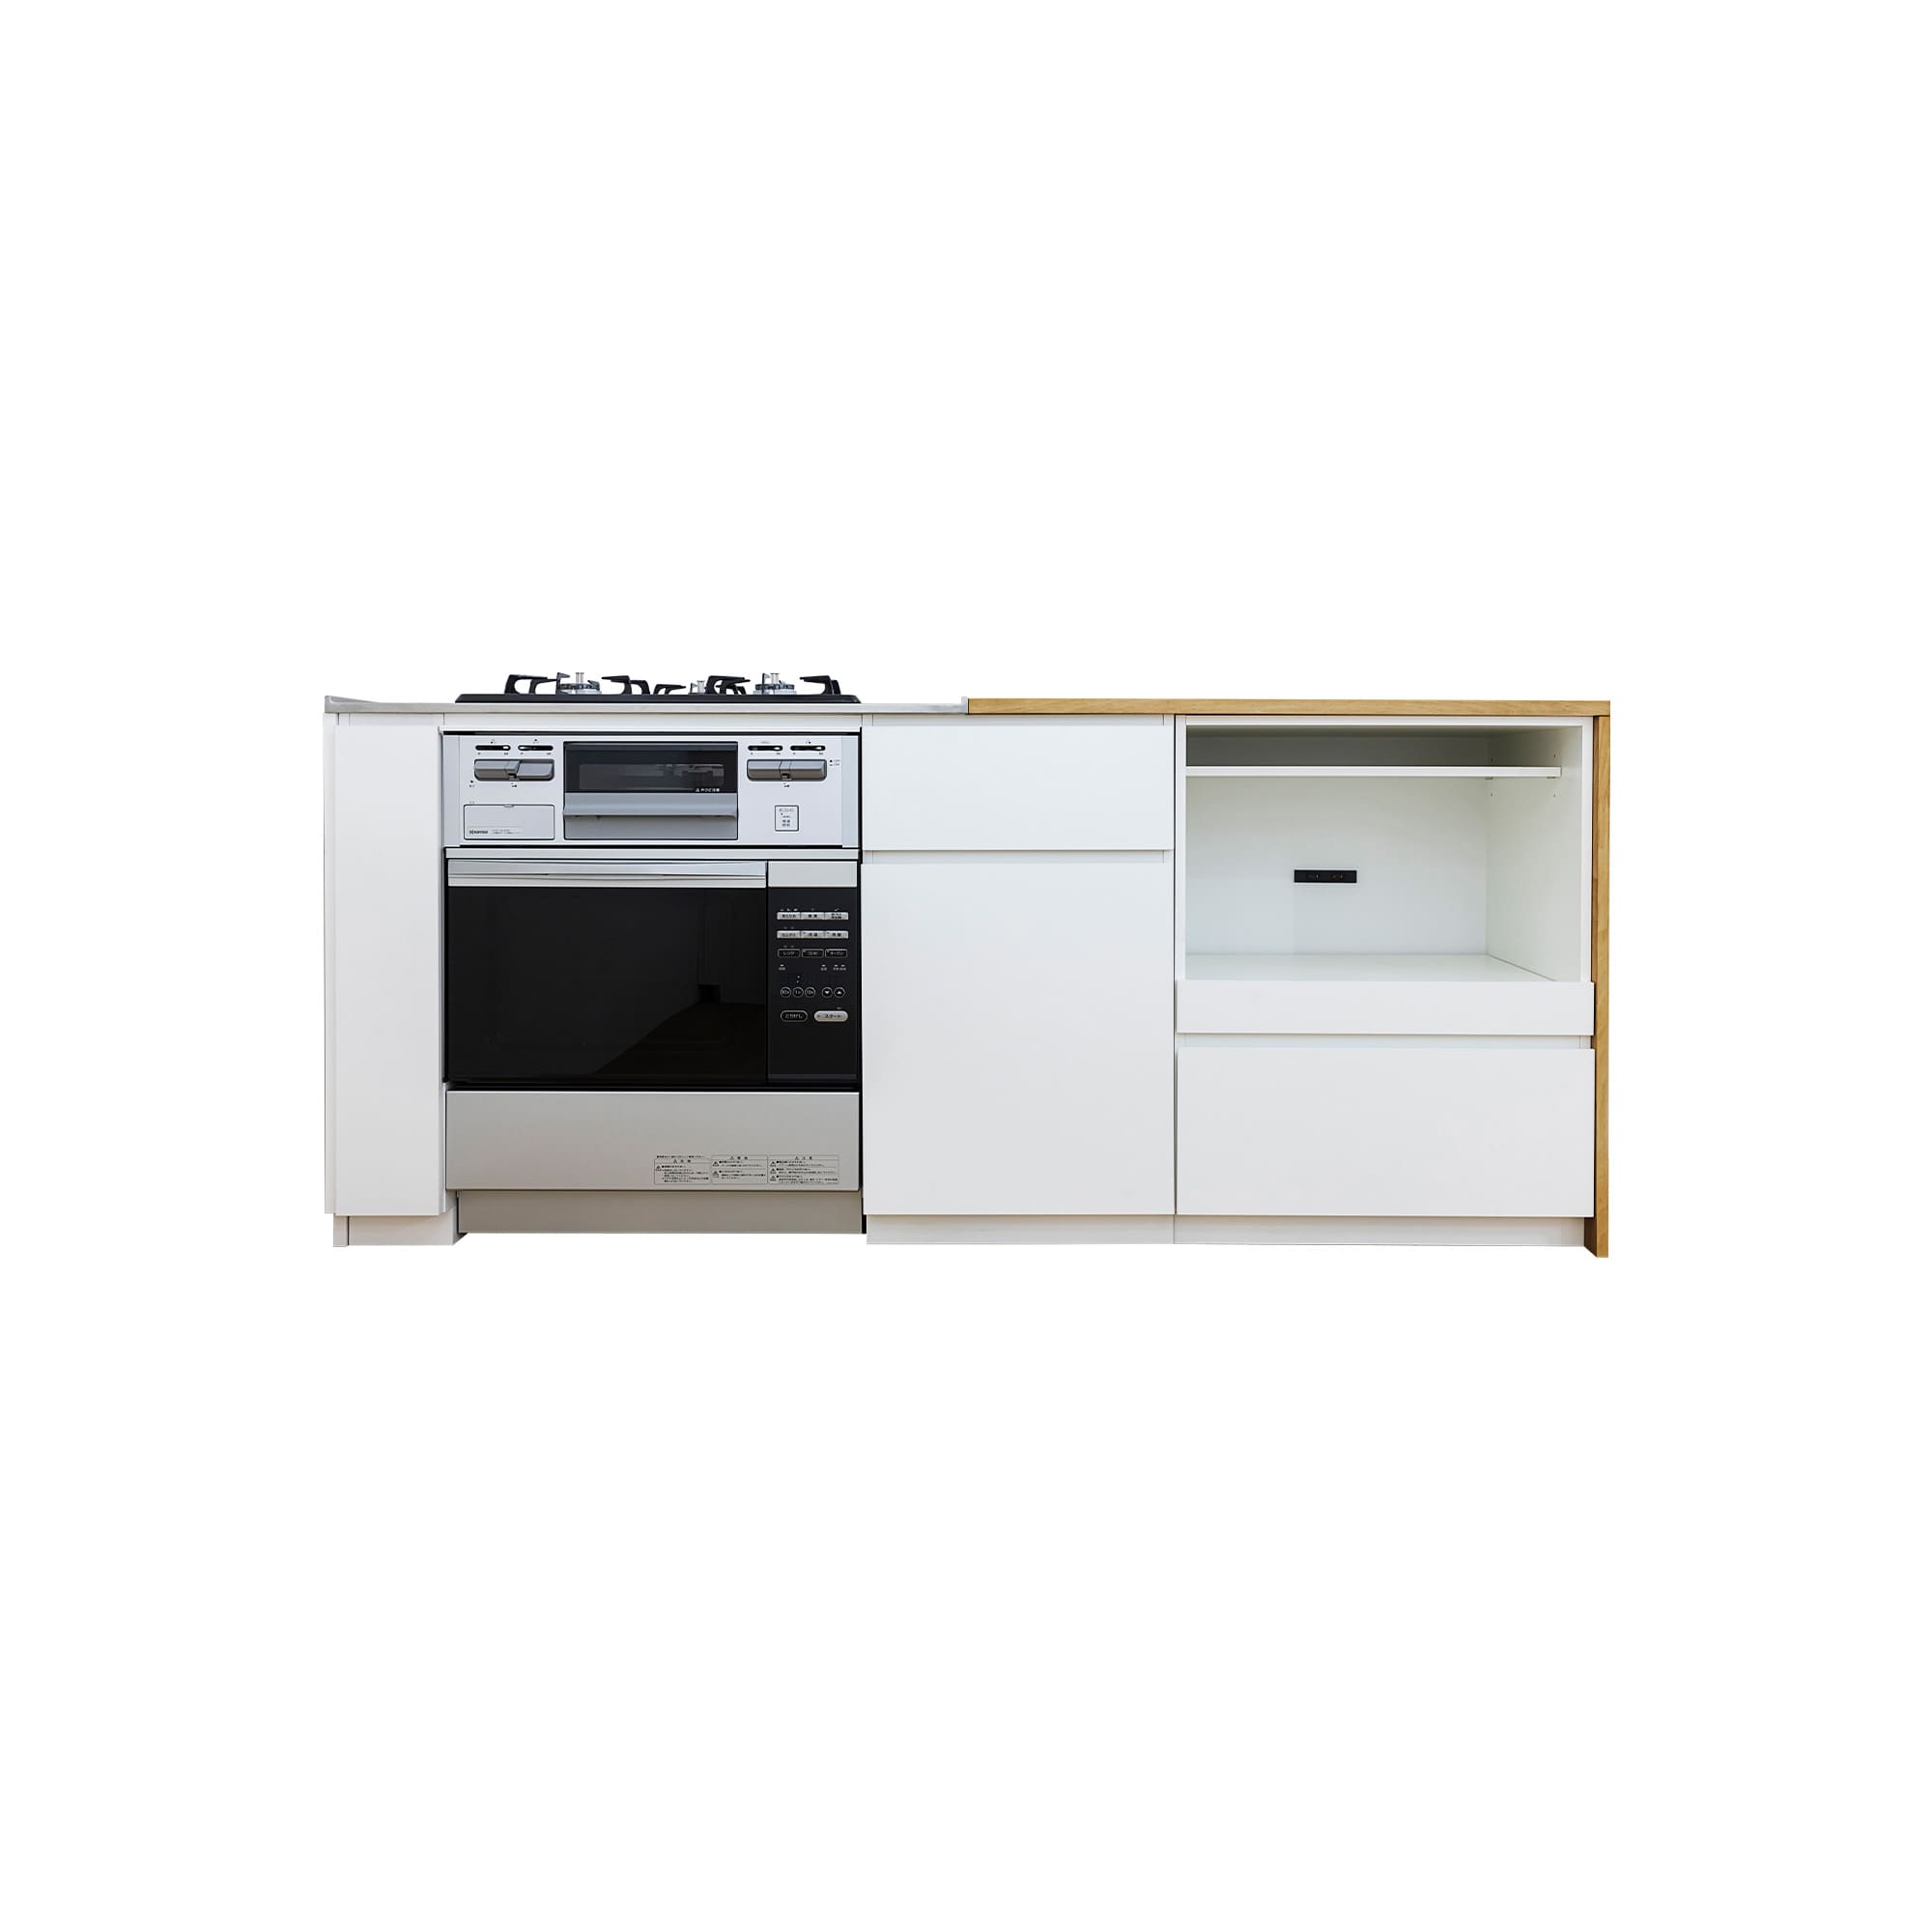 木天板キッチンⅡ型 壁付けコンロ側 オーブンタイプ W1540～1990 KB-KC029-10-G183 壁付けコンロ側　※ 別売り品のコンロ・オーブンを設置した時のイメージです